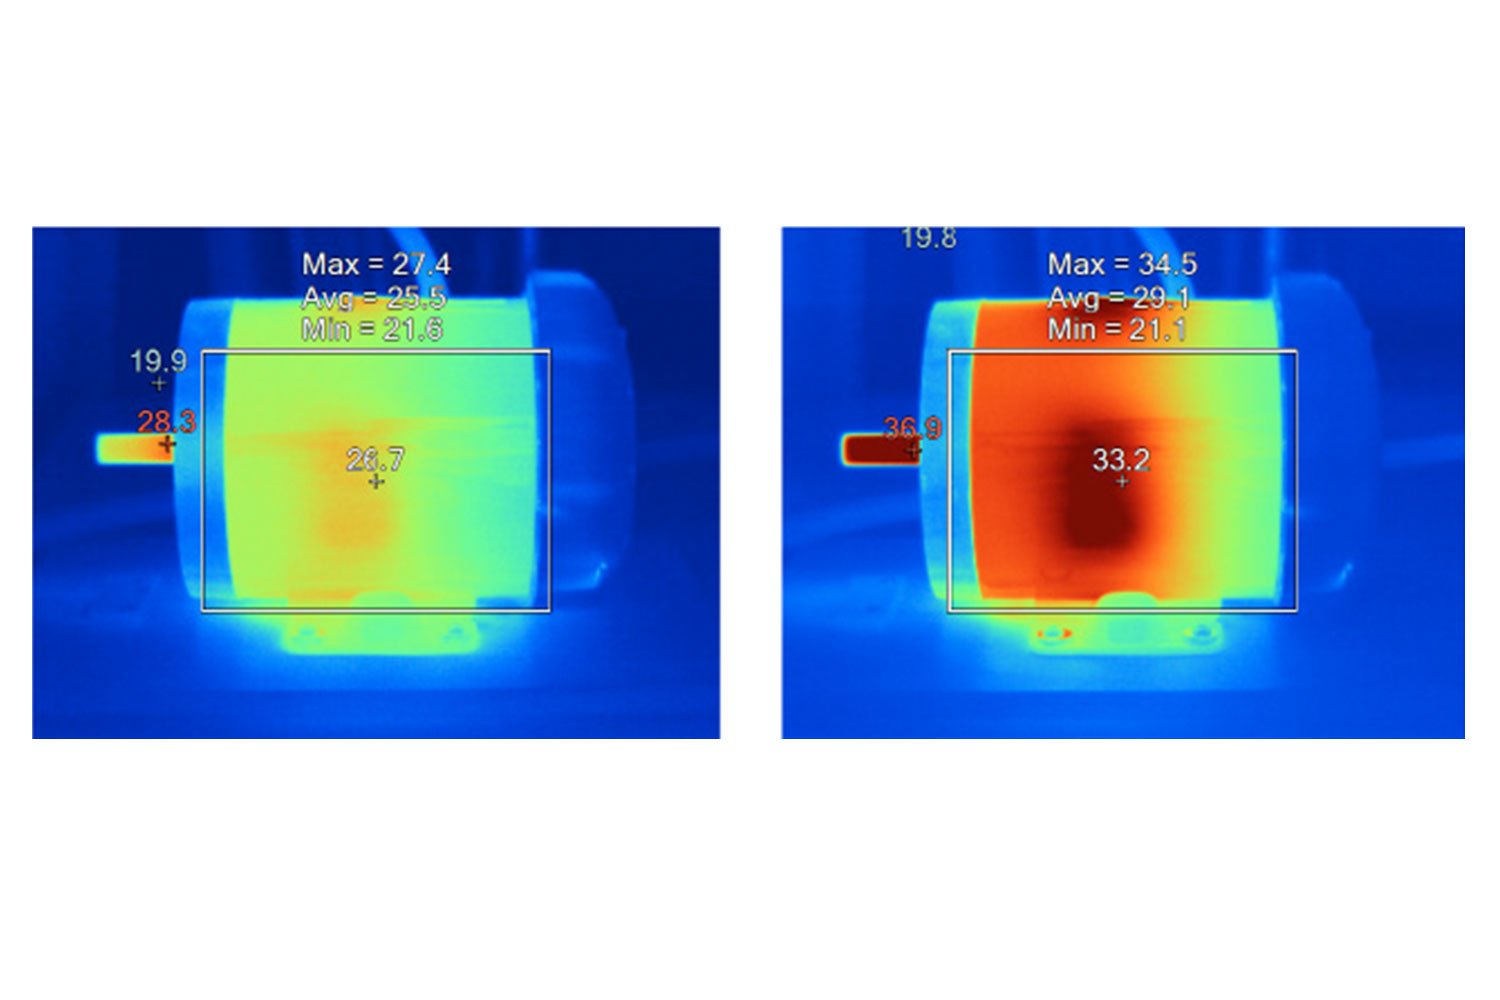 Les images thermiques comparent les températures des surfaces apparentes de moteurs identiques